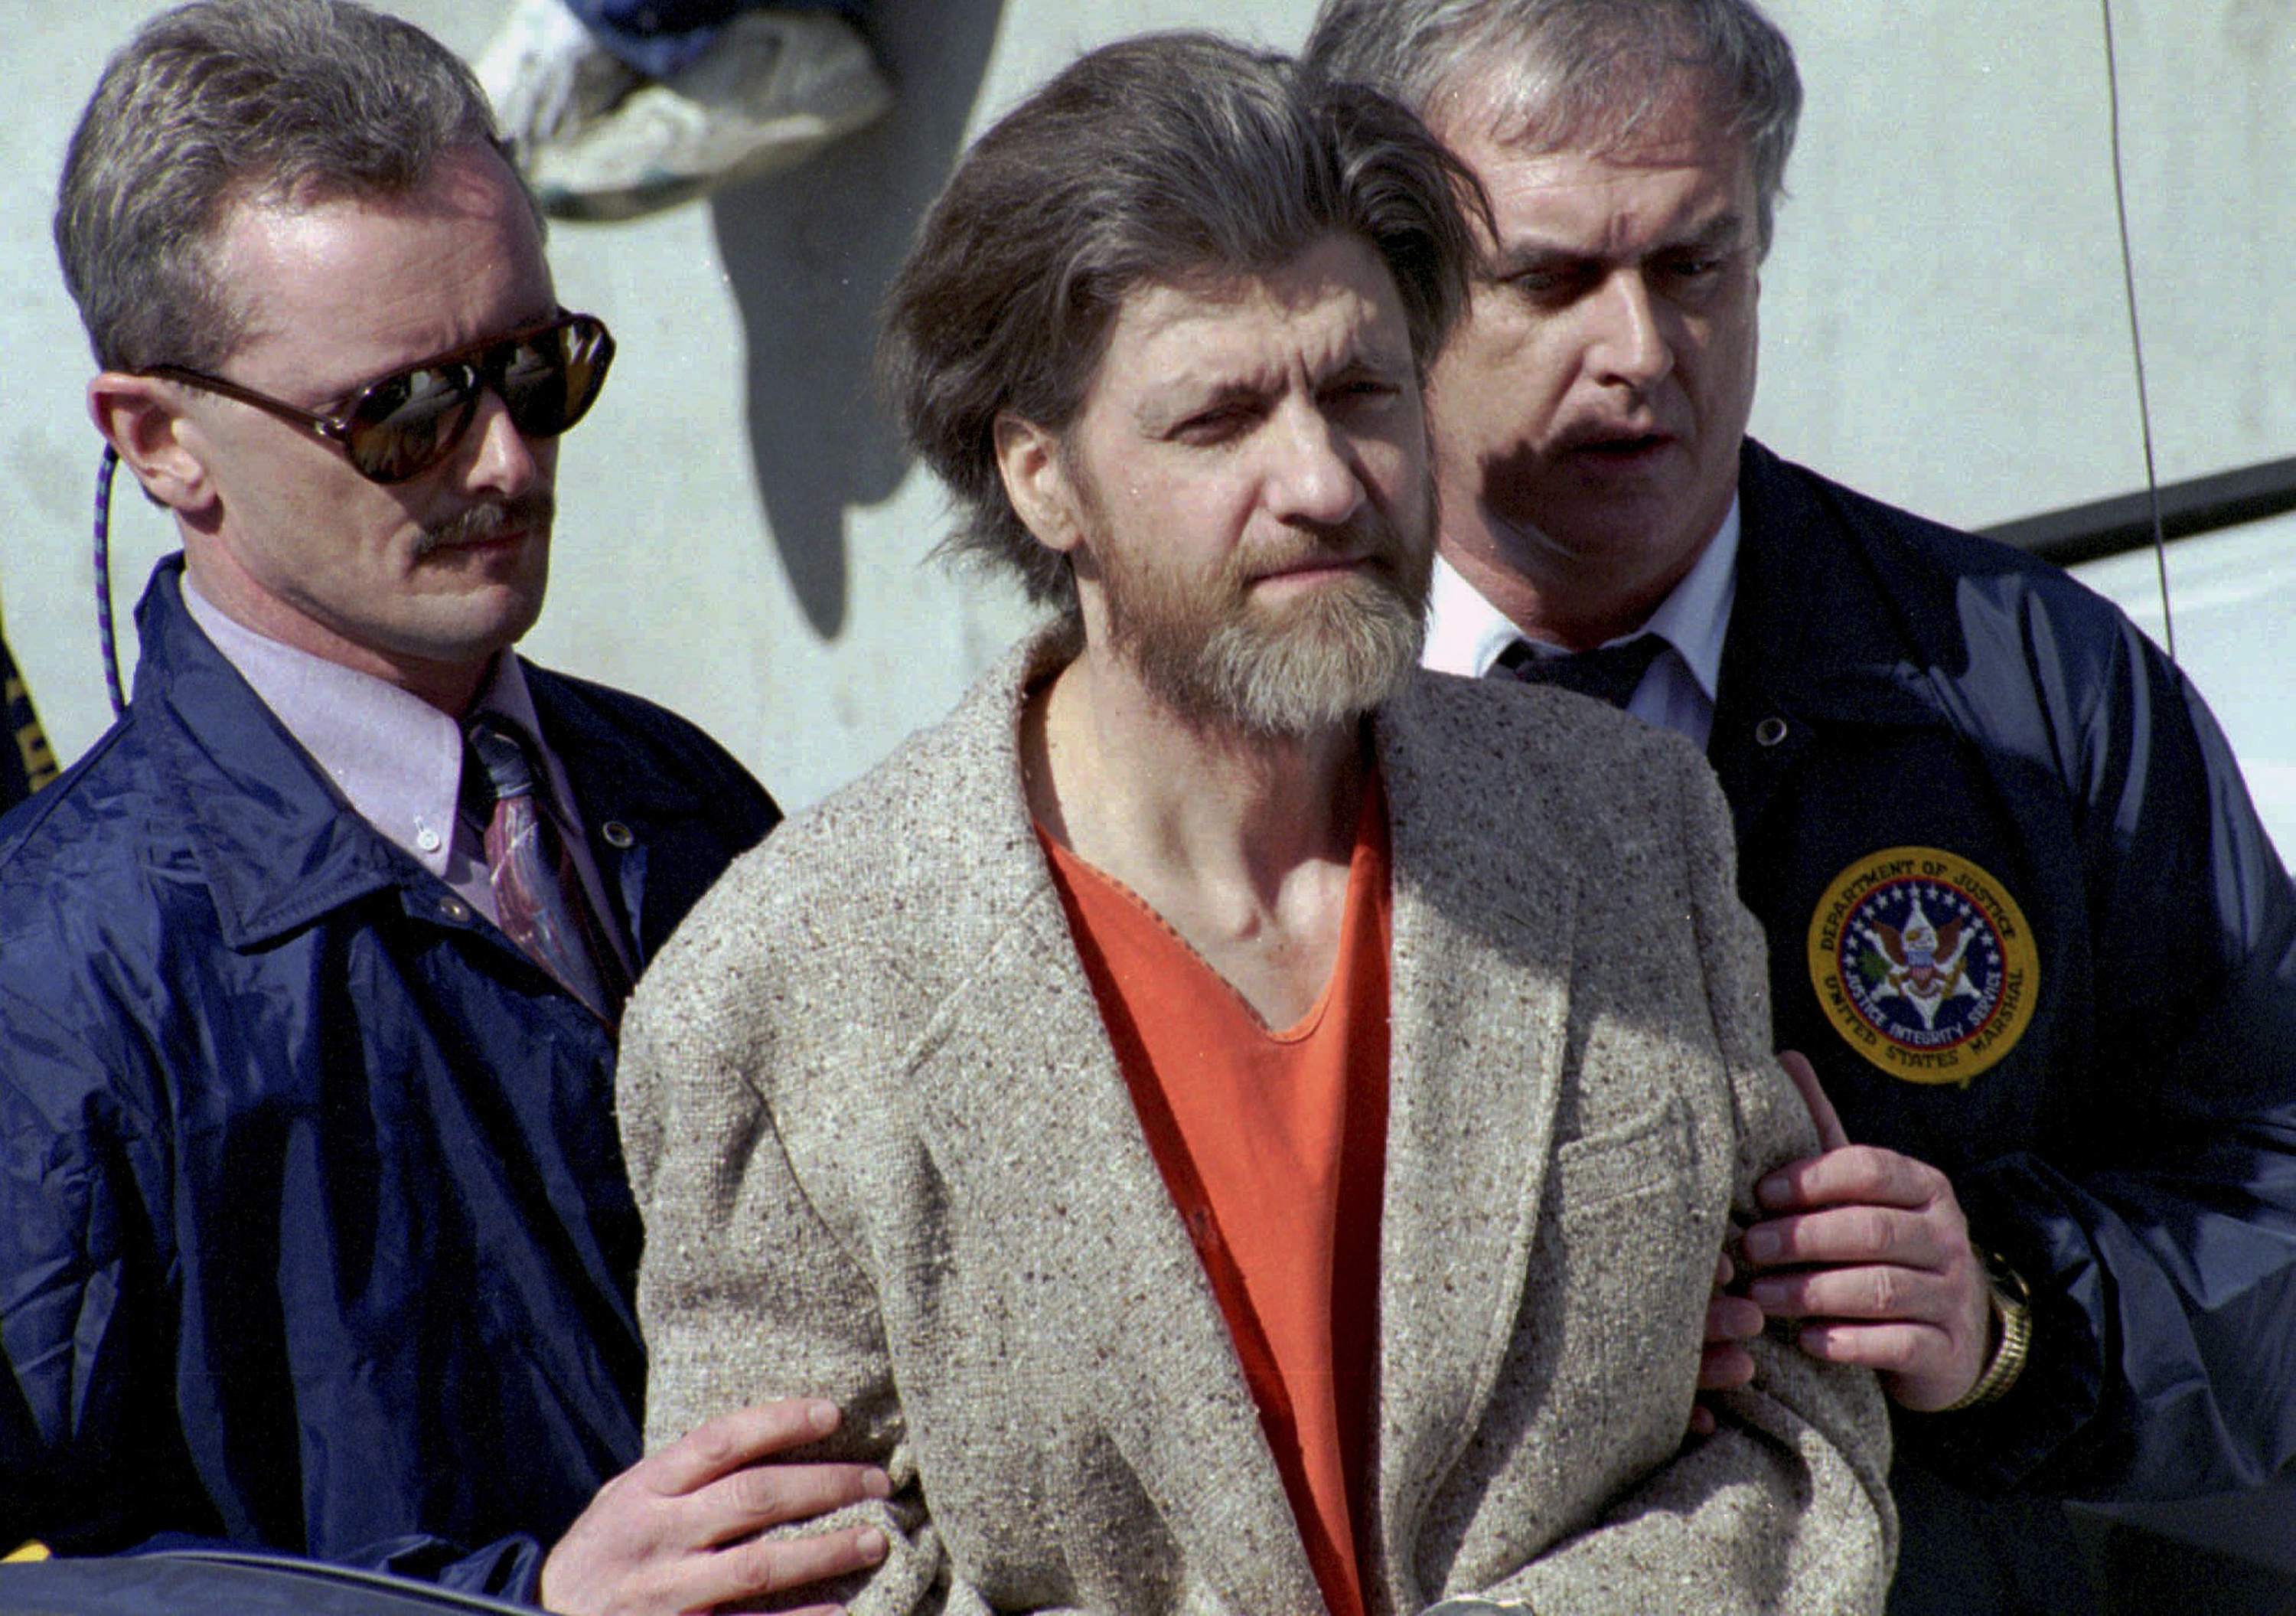 Murió en prisión Ted Kaczynski, el “Unabomber”